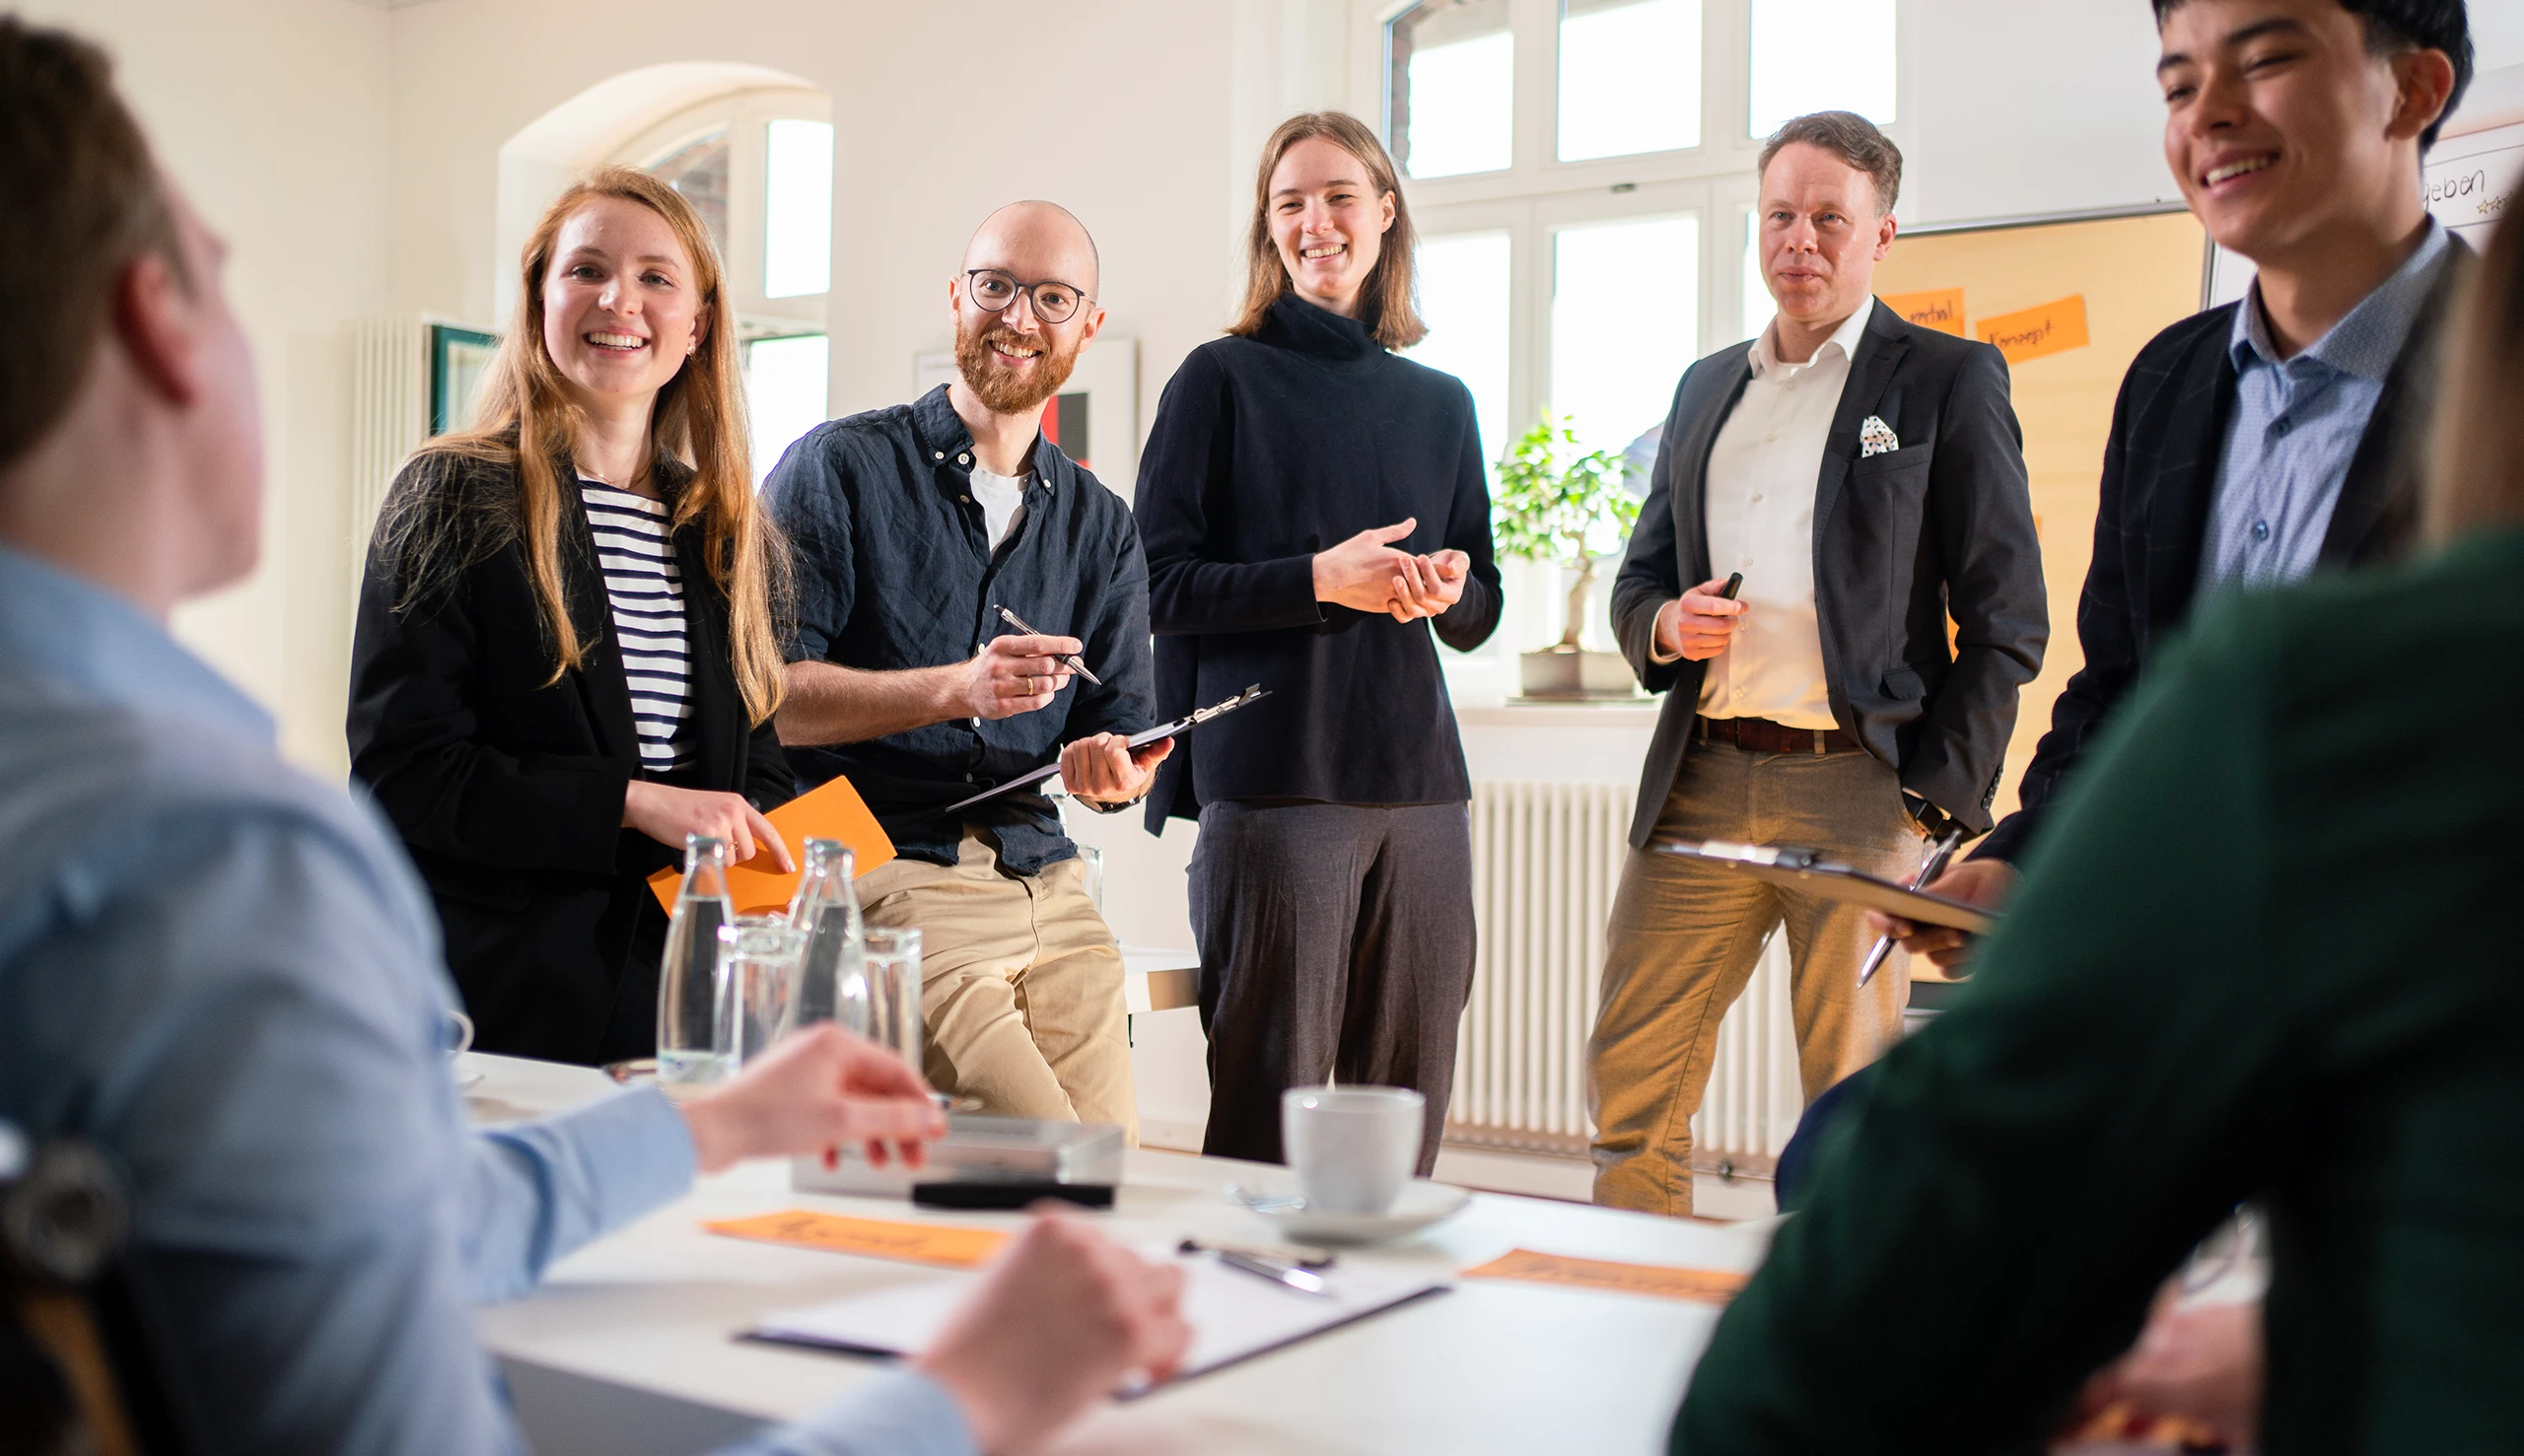 Ein Seminar oder Workshop bei //thamm in Osnabrück, mit sieben lächelnden Menschen, die sich gerade in einer Diskussion befinden.